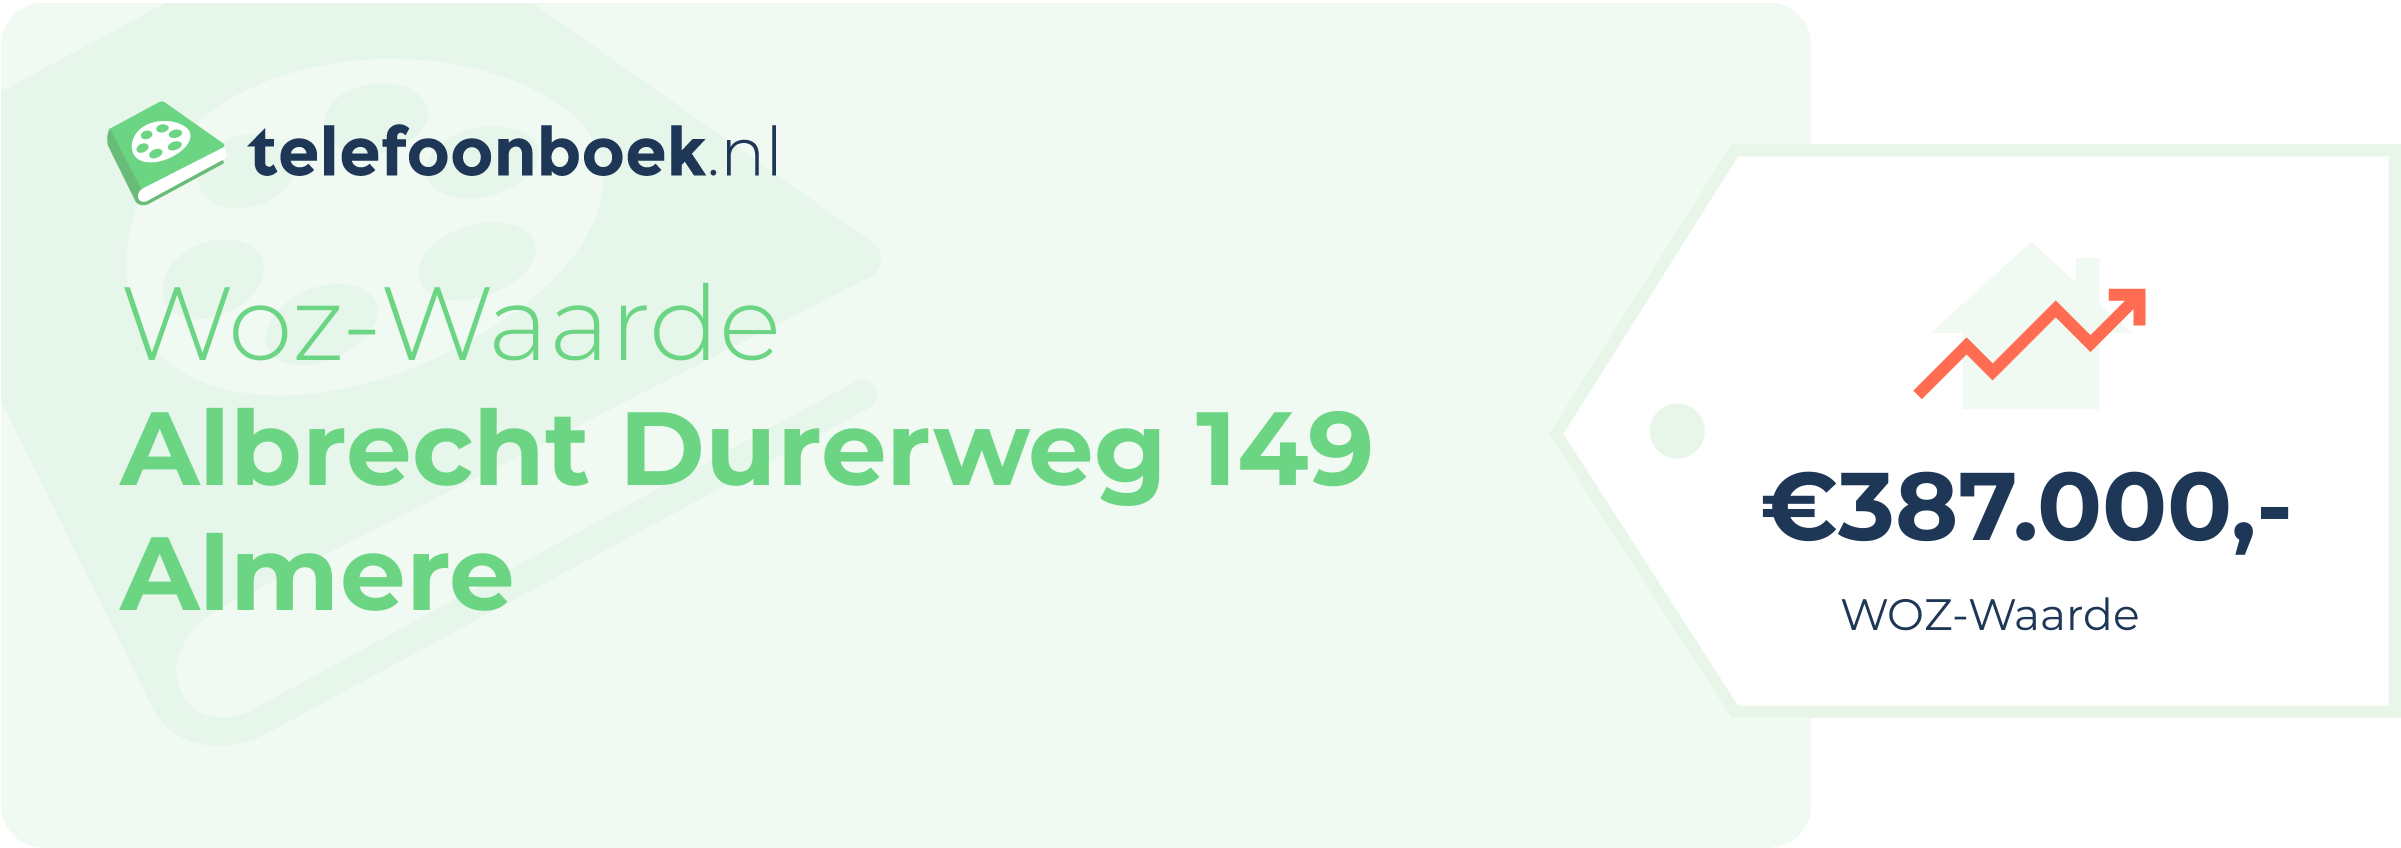 WOZ-waarde Albrecht Durerweg 149 Almere